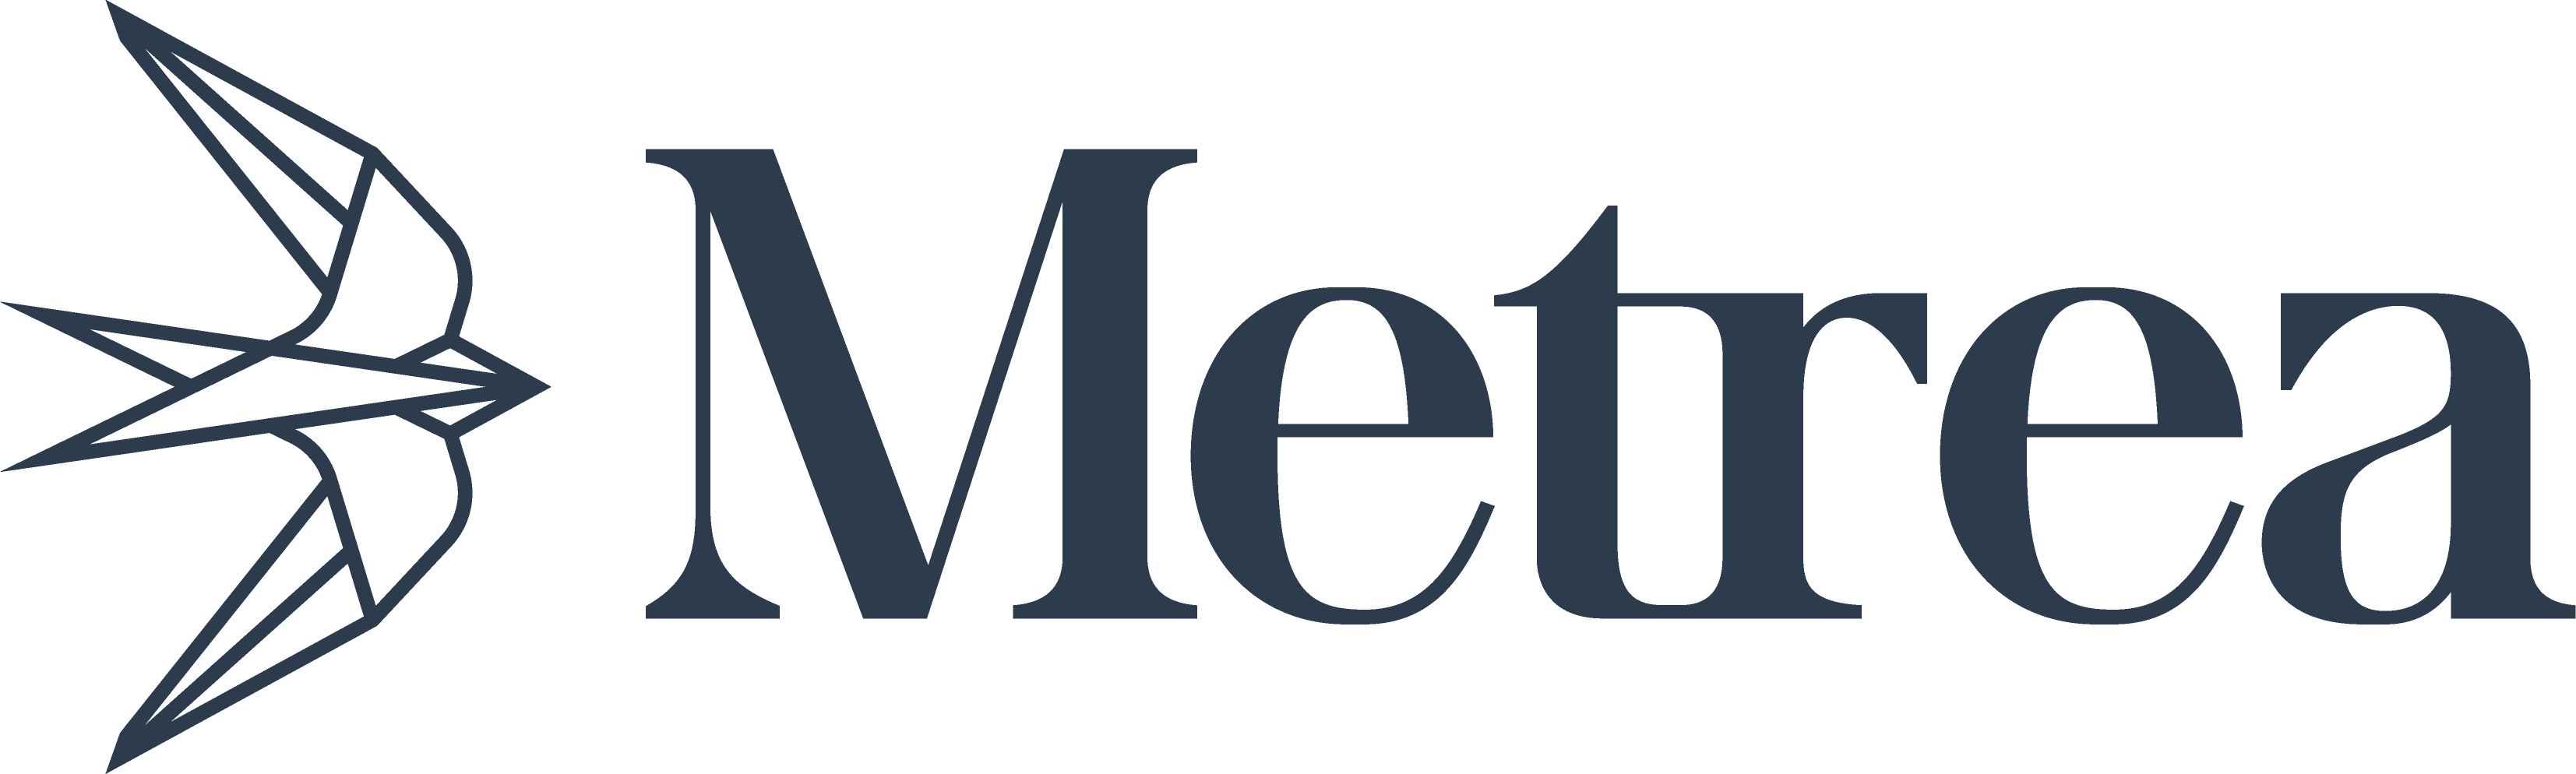 Metrea  logo